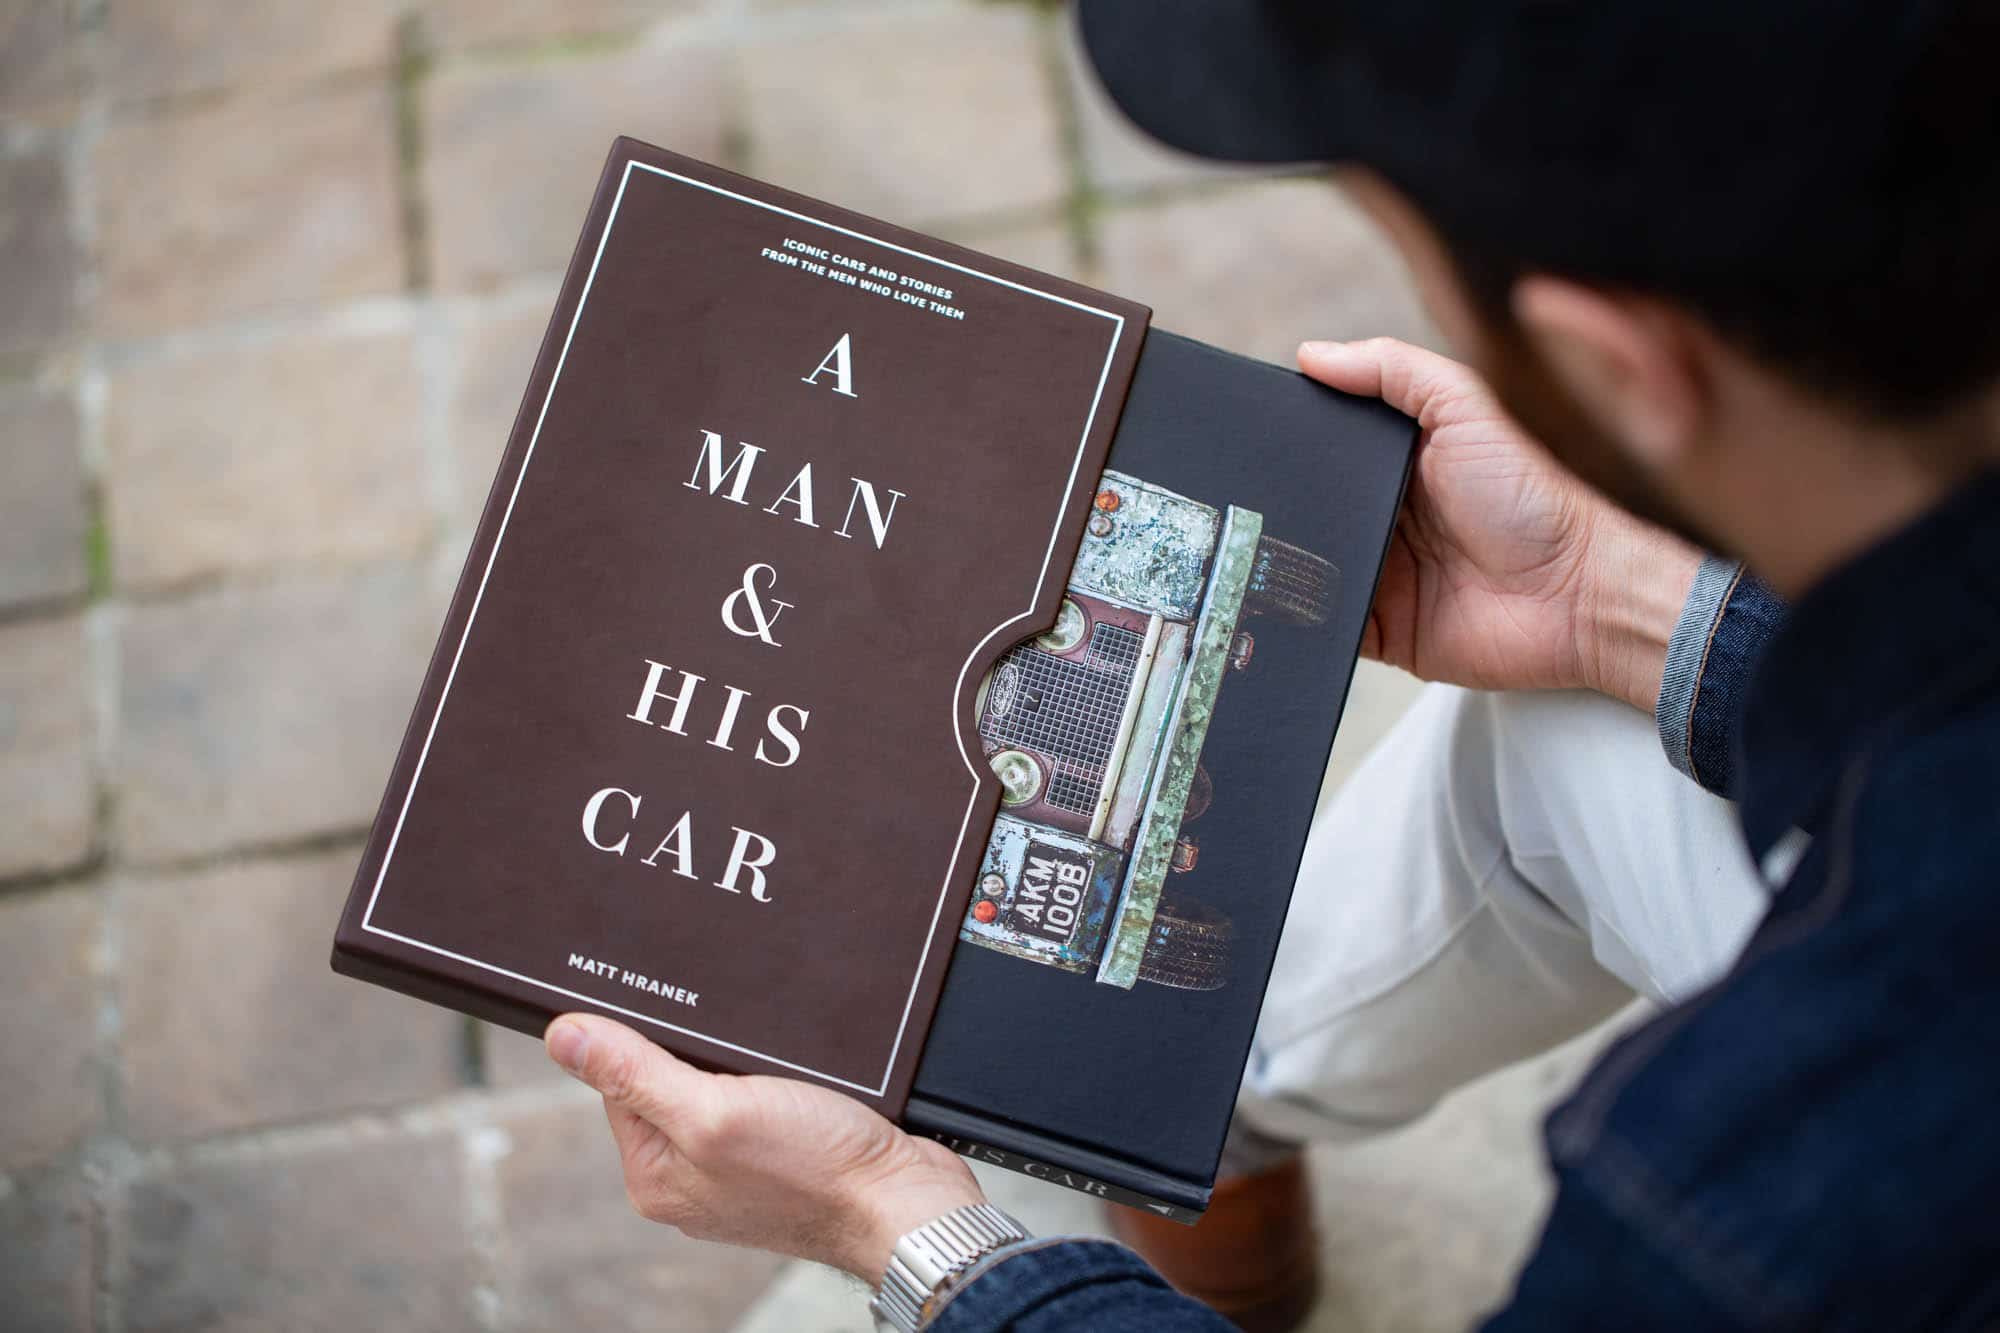 "A Man & His Car" - Matt Hranek